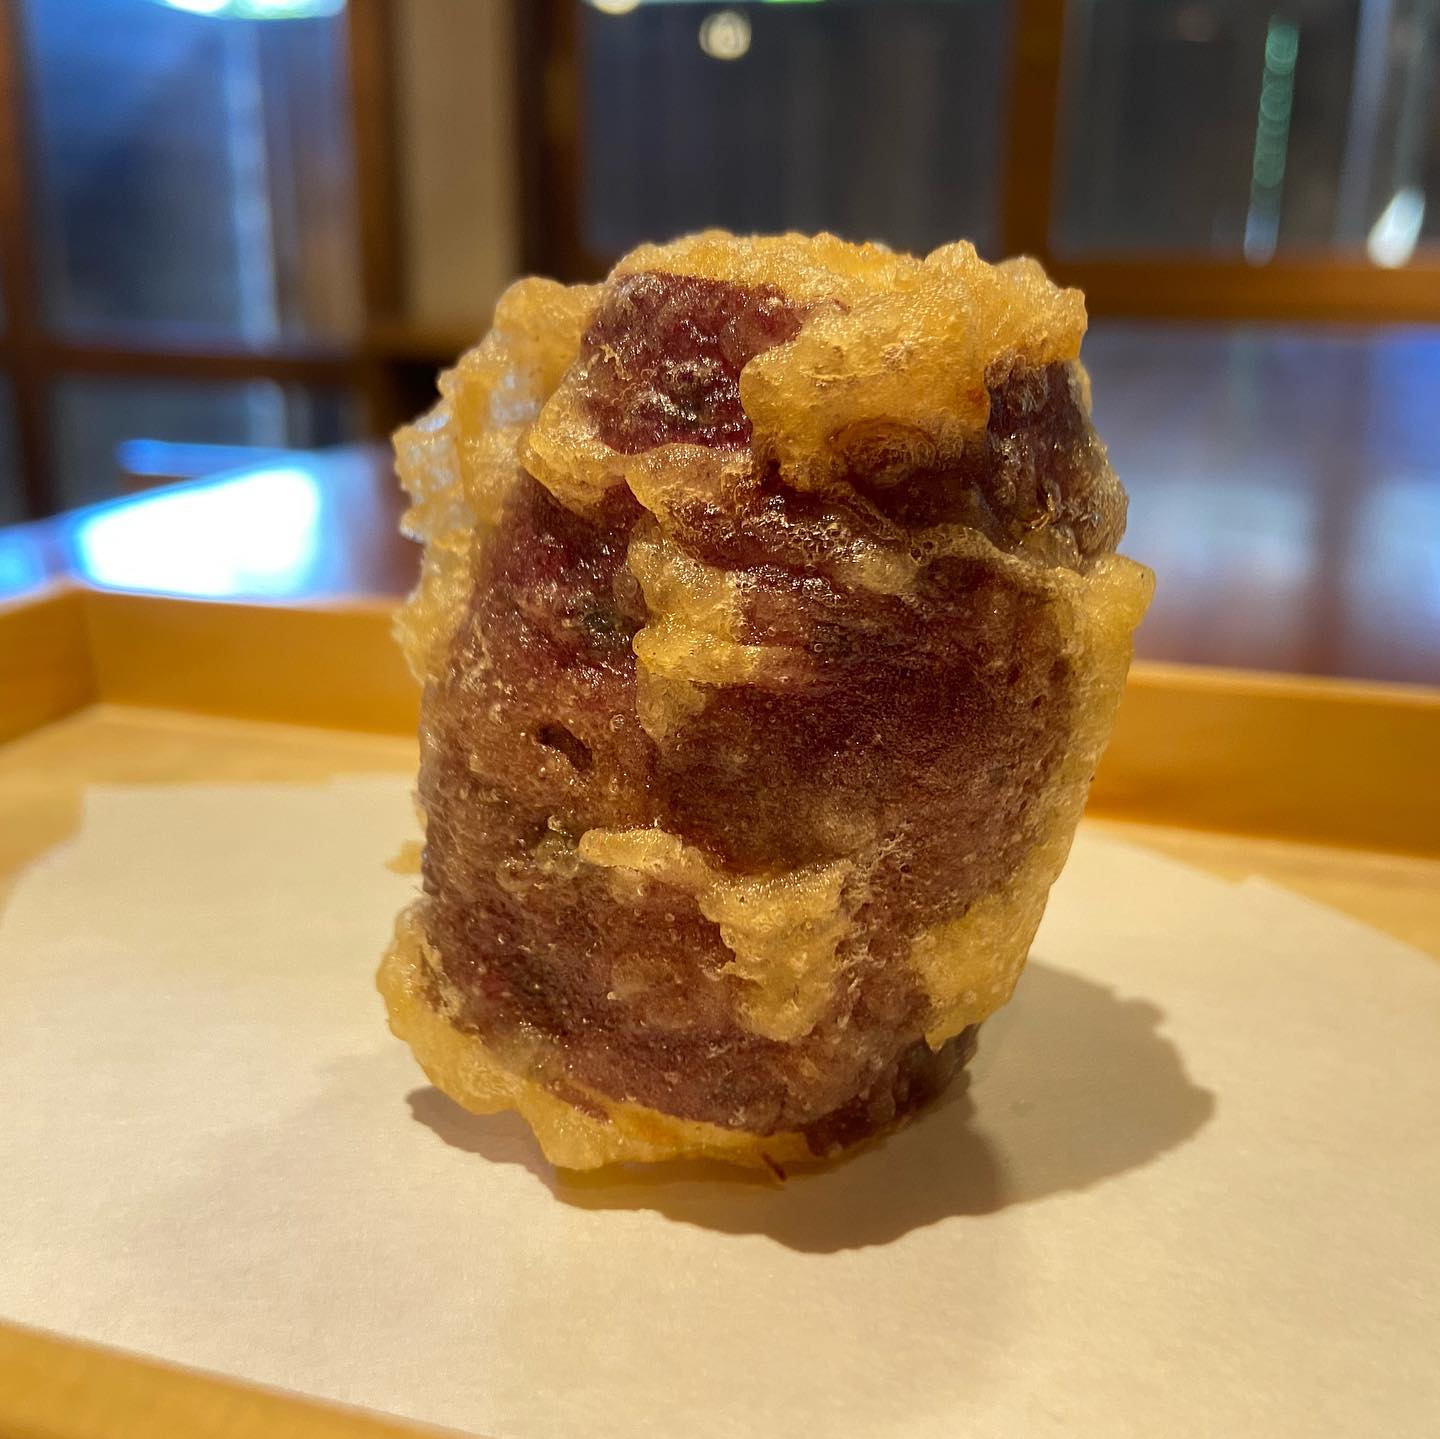 坊ちゃんカボチャと金時芋の天ぷらです。どちらも、中ホクホクで甘いですよ。